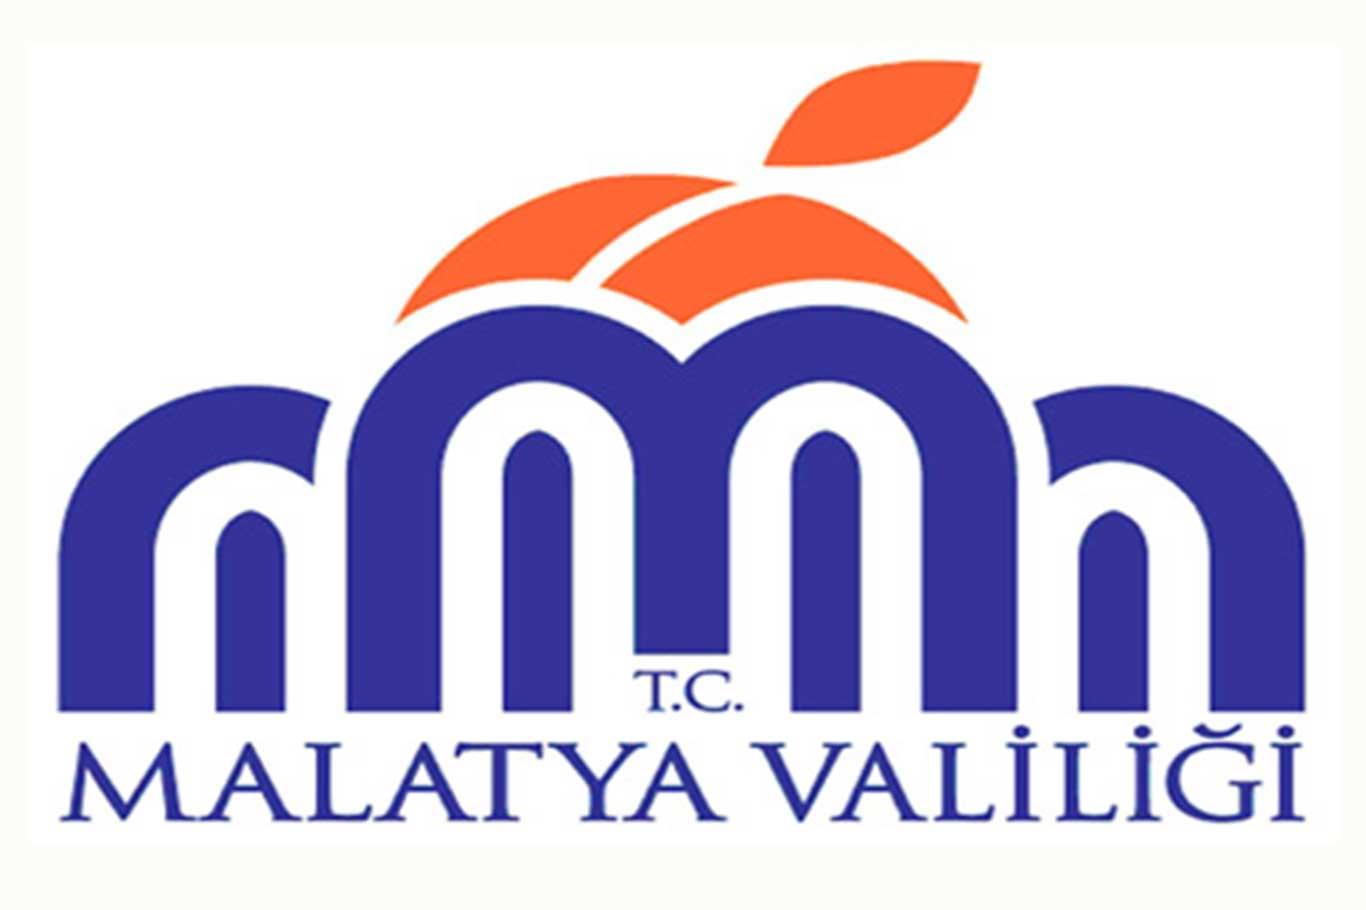 Malatya'da karantinaya alınan mahalle sayısı 3'e çıktı